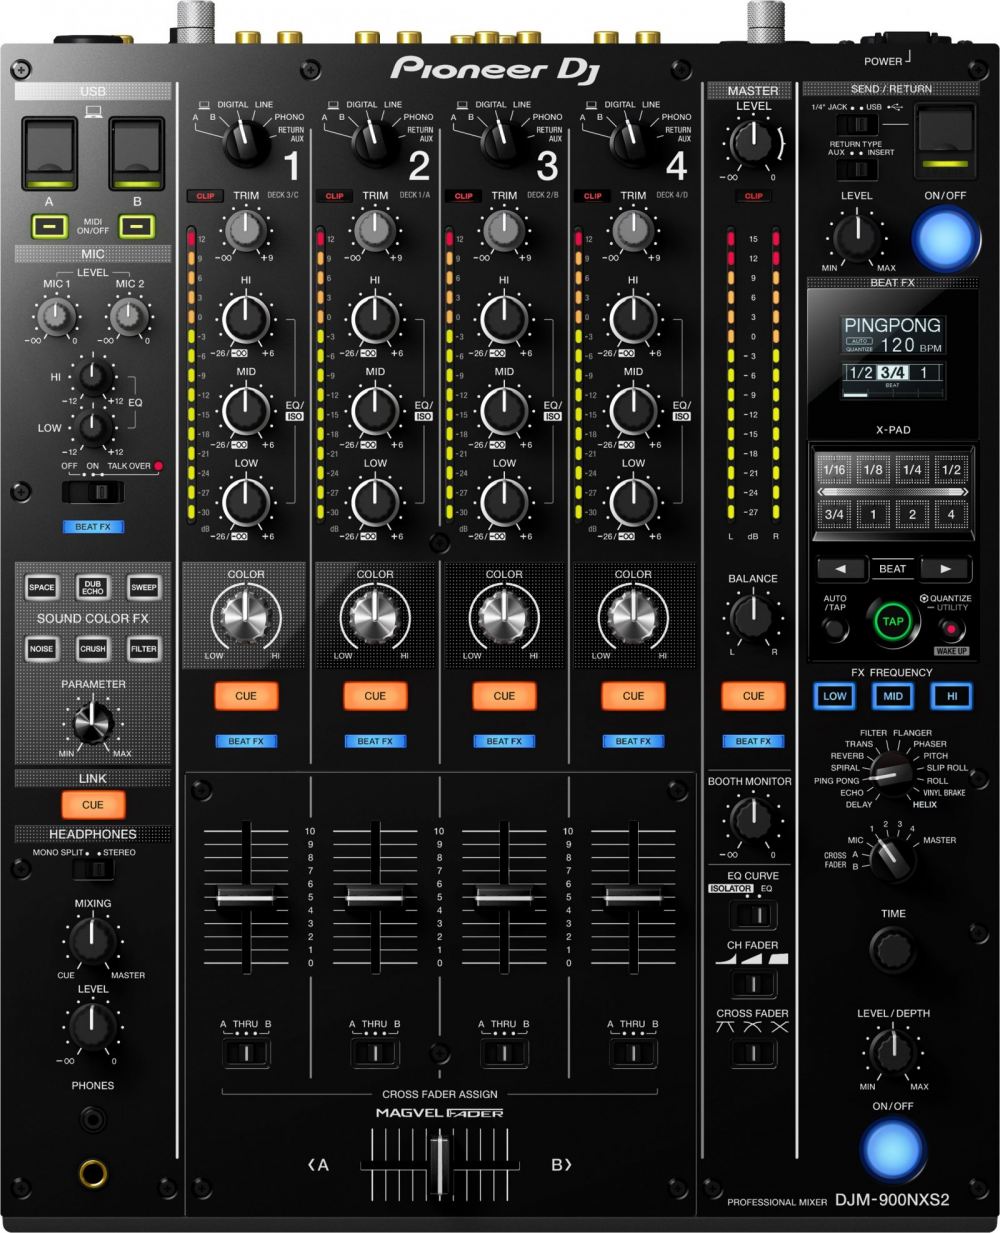 PIONEER DJM-900NXS2 4 CHANNEL PROFESSIONAL DJ MIXER (BLACK), PIONEER, DJ GEAR, pioneer-dj-gear-djm-900nxs2, ZOSO MUSIC SDN BHD